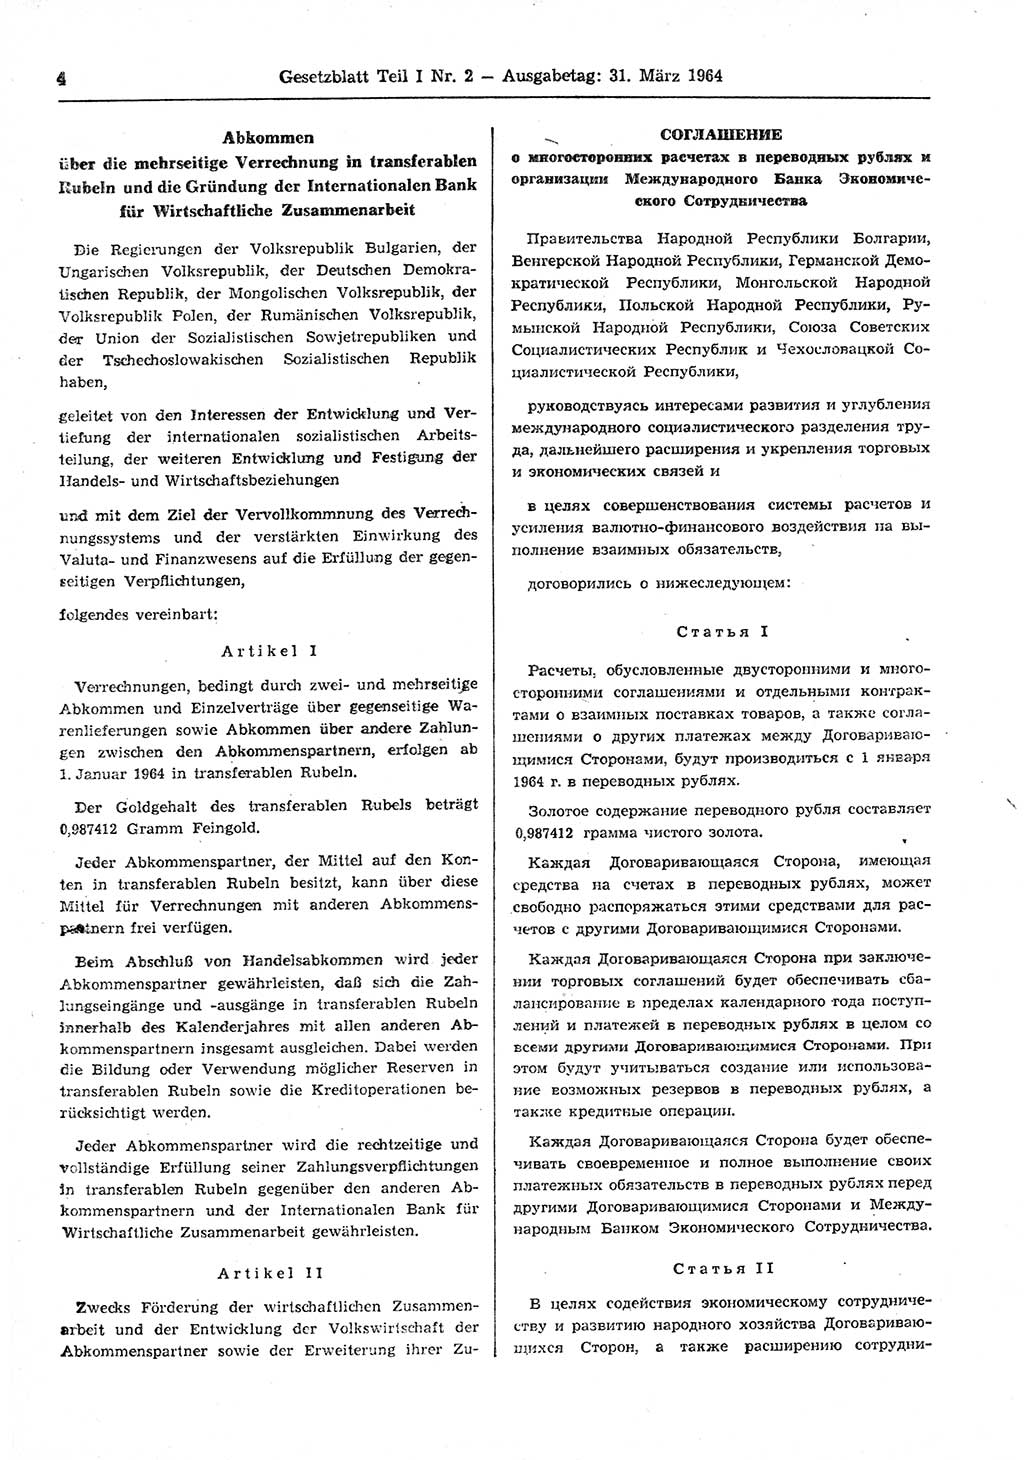 Gesetzblatt (GBl.) der Deutschen Demokratischen Republik (DDR) Teil Ⅰ 1964, Seite 4 (GBl. DDR Ⅰ 1964, S. 4)